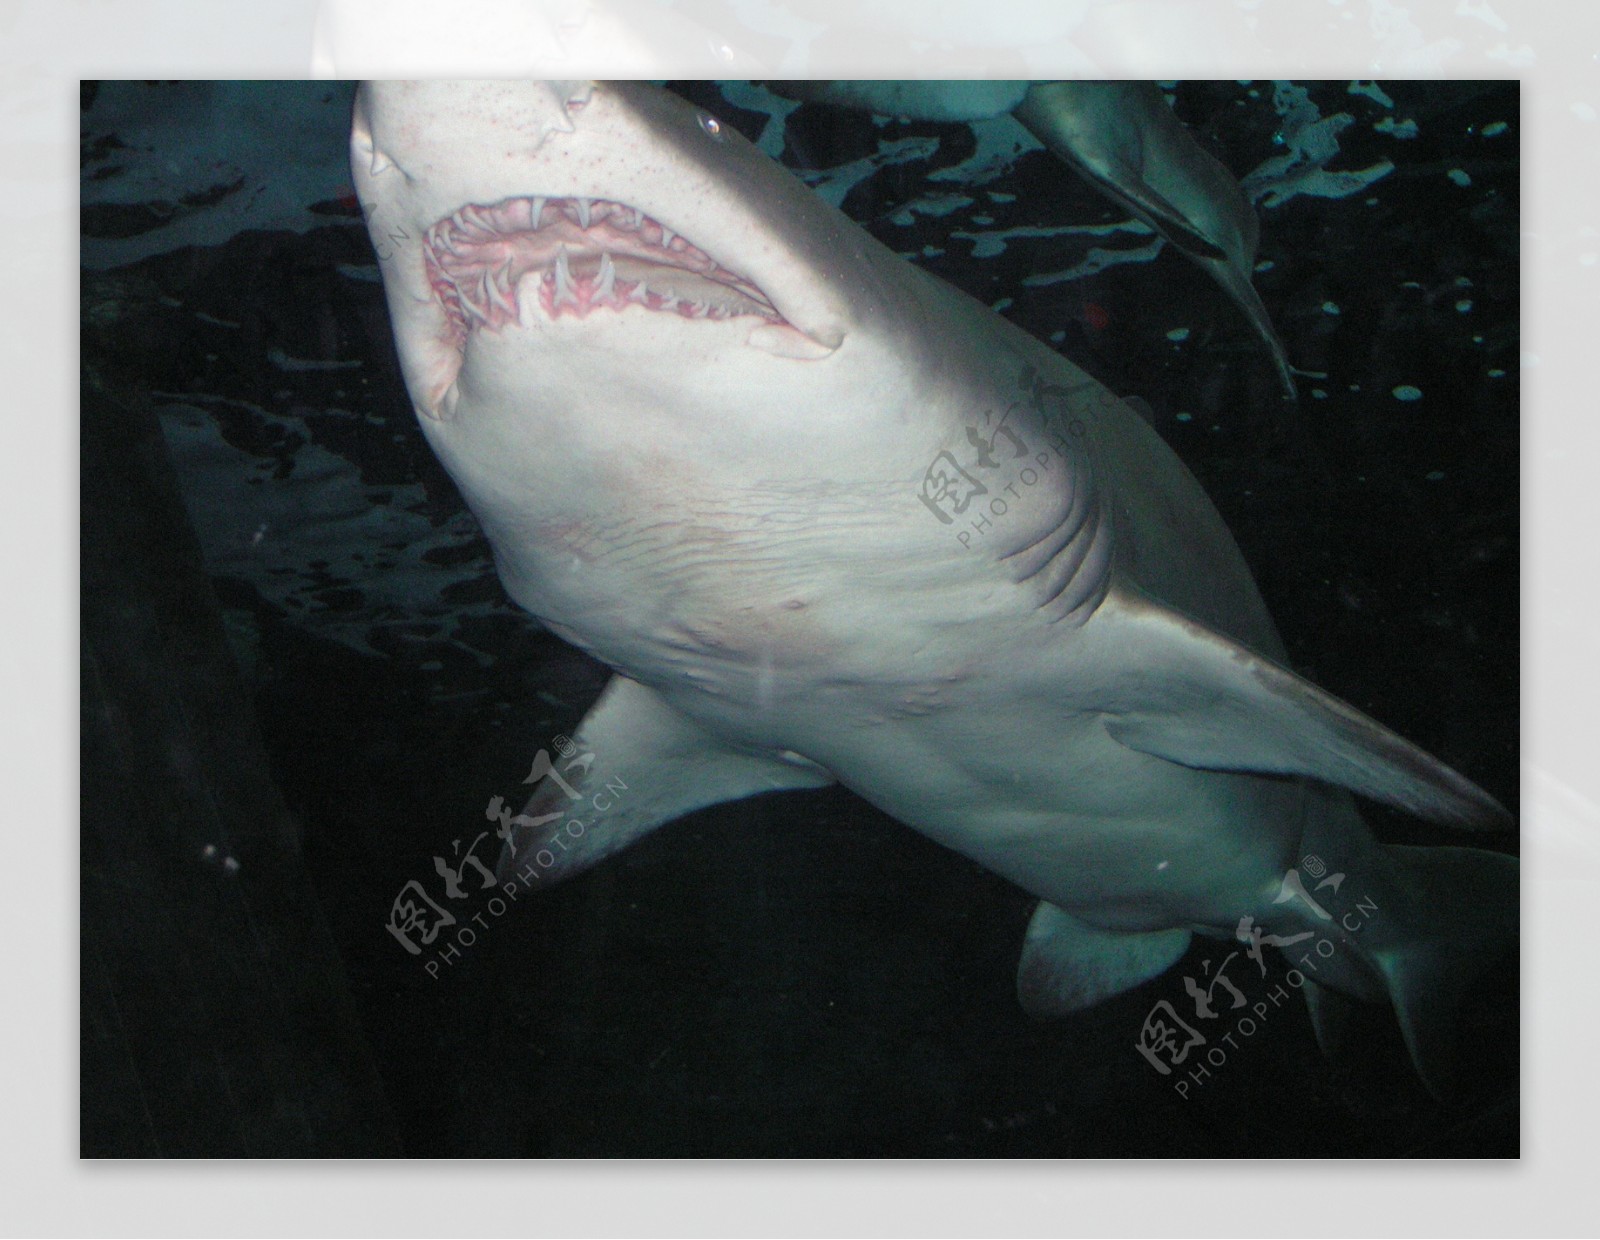 暑期档惊悚颠峰 人鲨决战 电影《大白鲨之夺命鲨口》明日开鲨 - 360娱乐，你开心就好